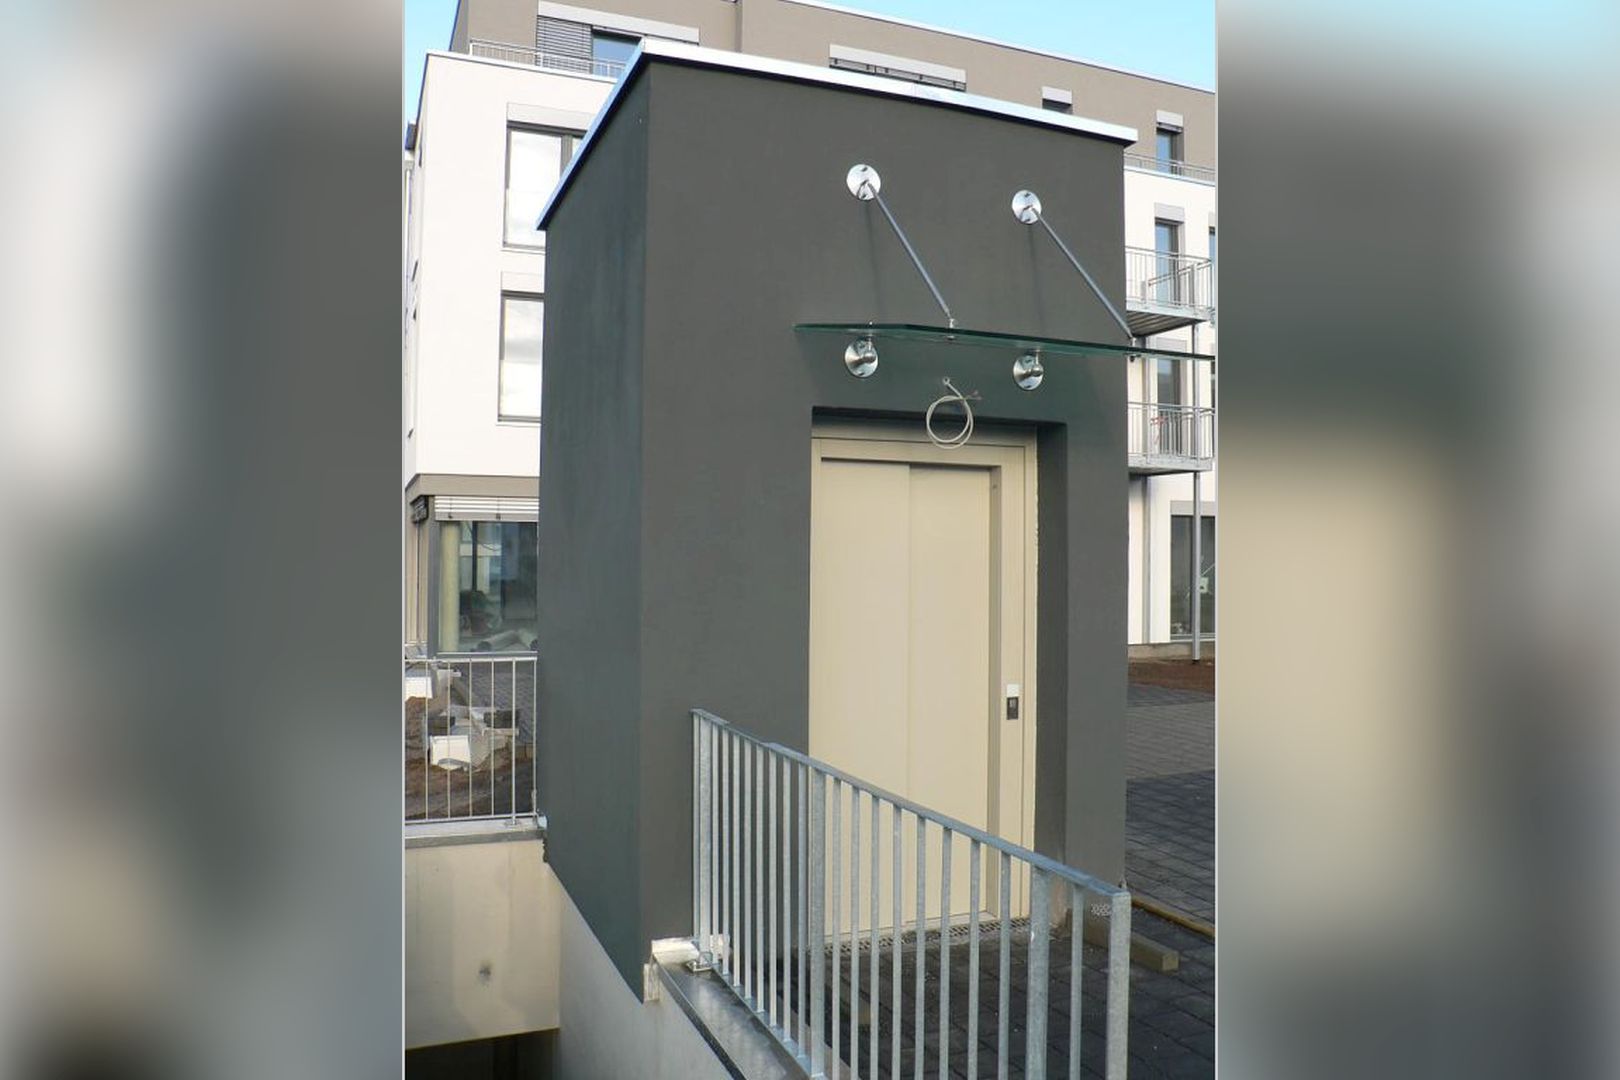 Immobilie Nr.Köln 003.5 - 5-Raum-Wohnung mit Wintergartenküche, 2 Bädern u. großem Balkon  - Bild 3.jpg